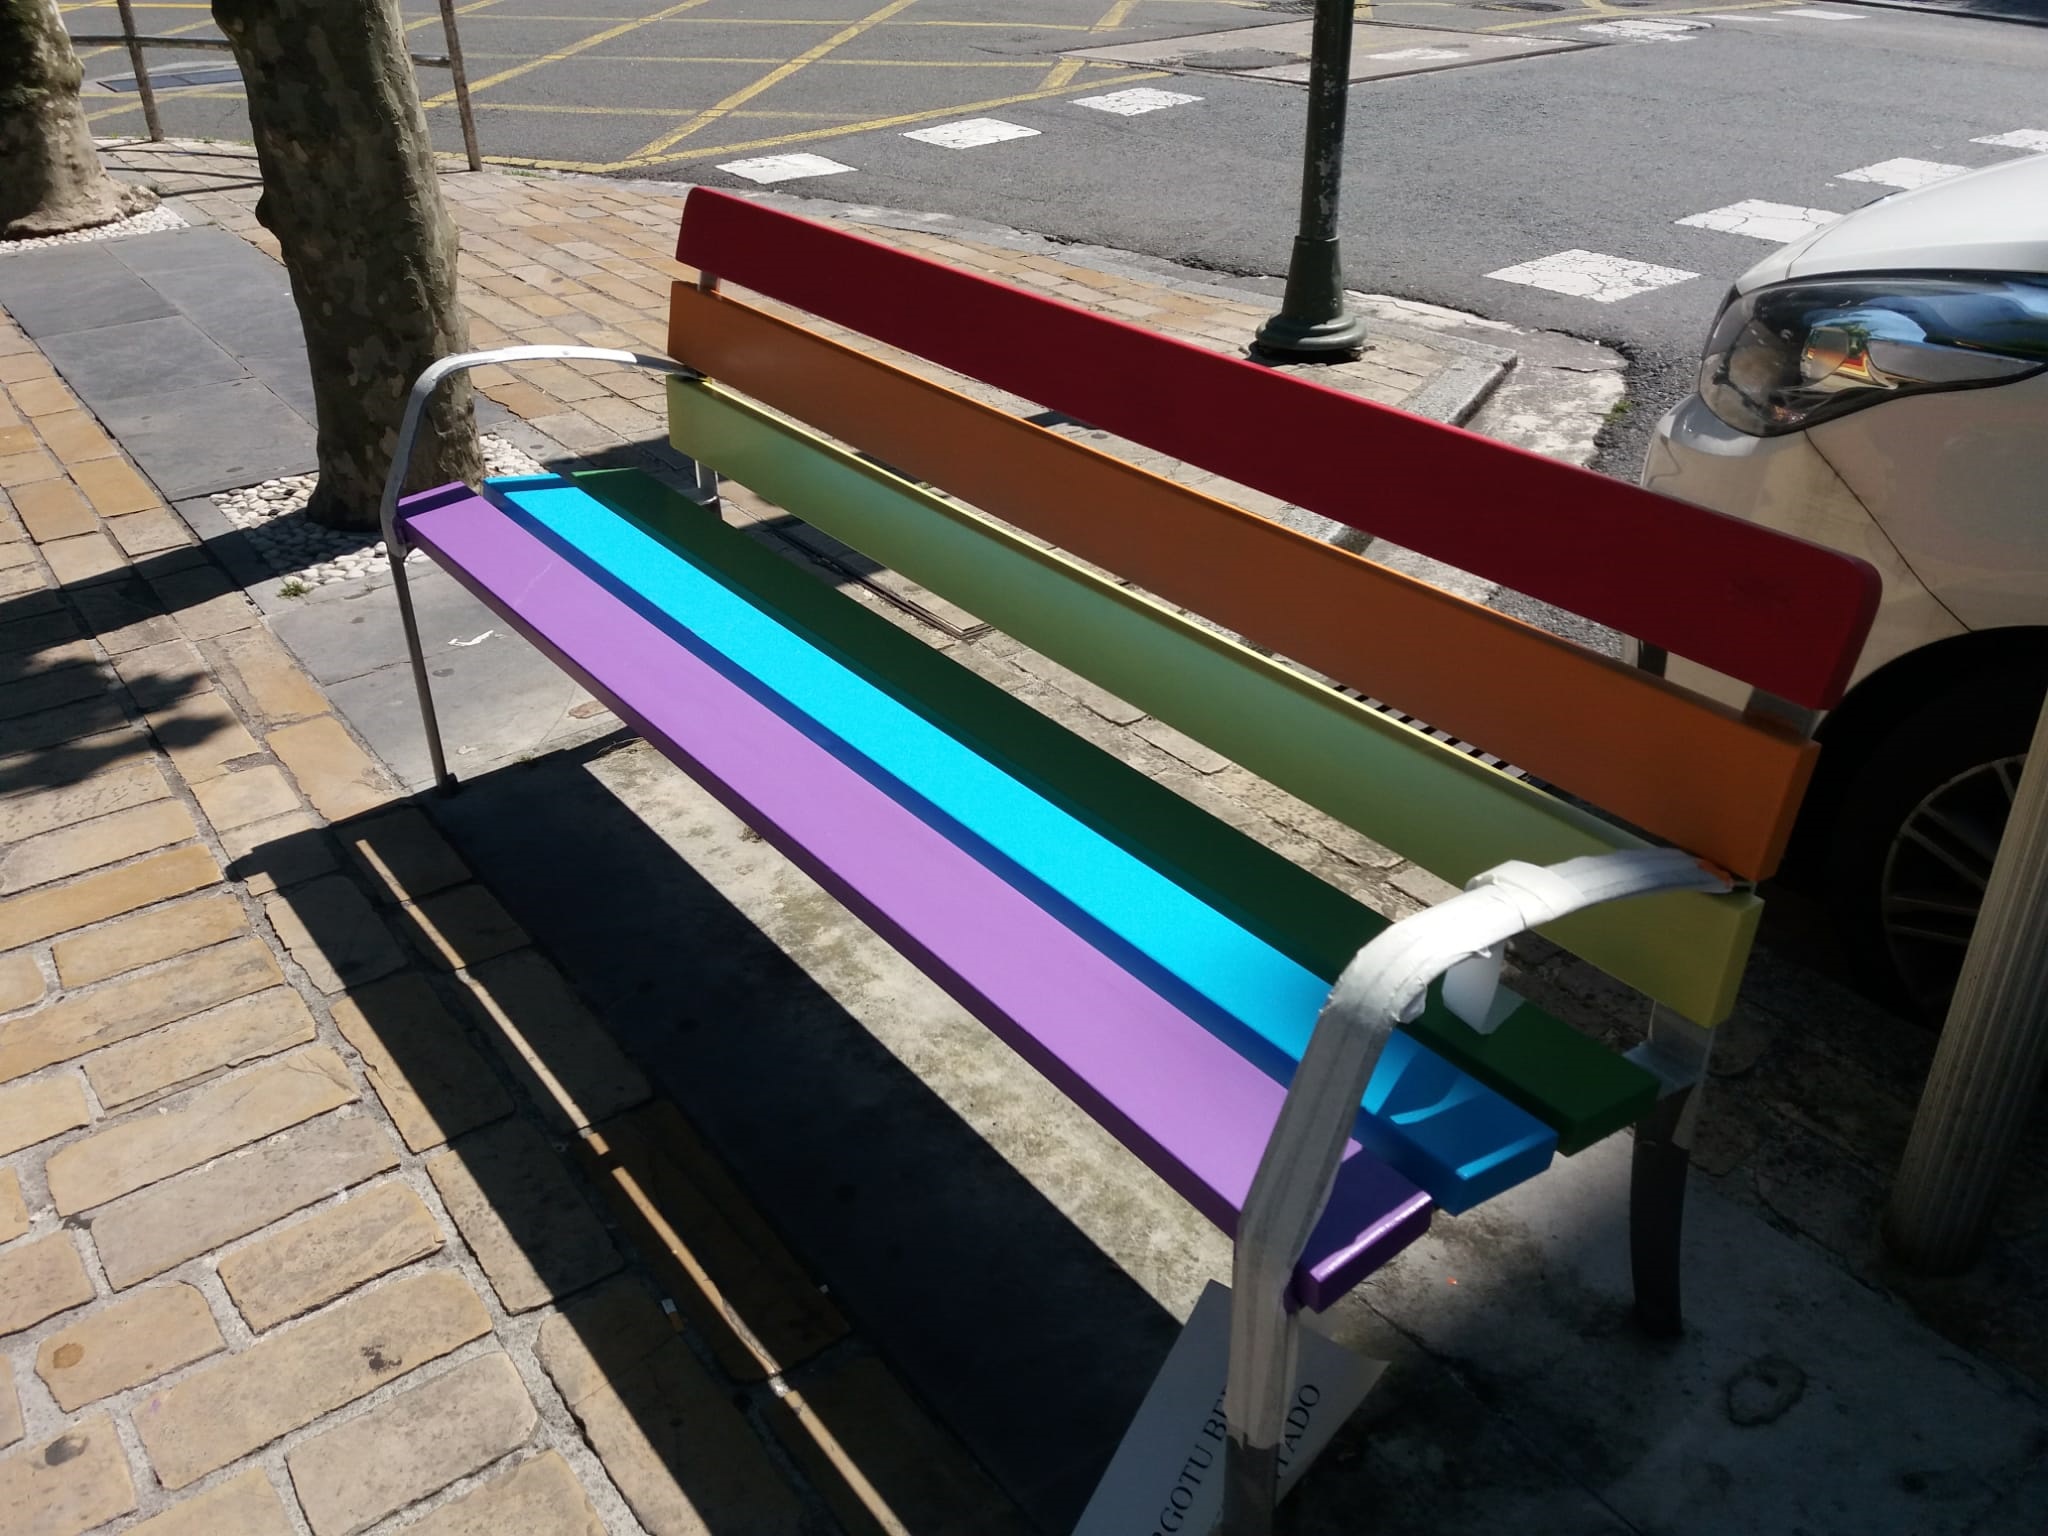 Este año también pintaremos bancos con los colores del arcoíris para reivindicar los derechos LGTBI+